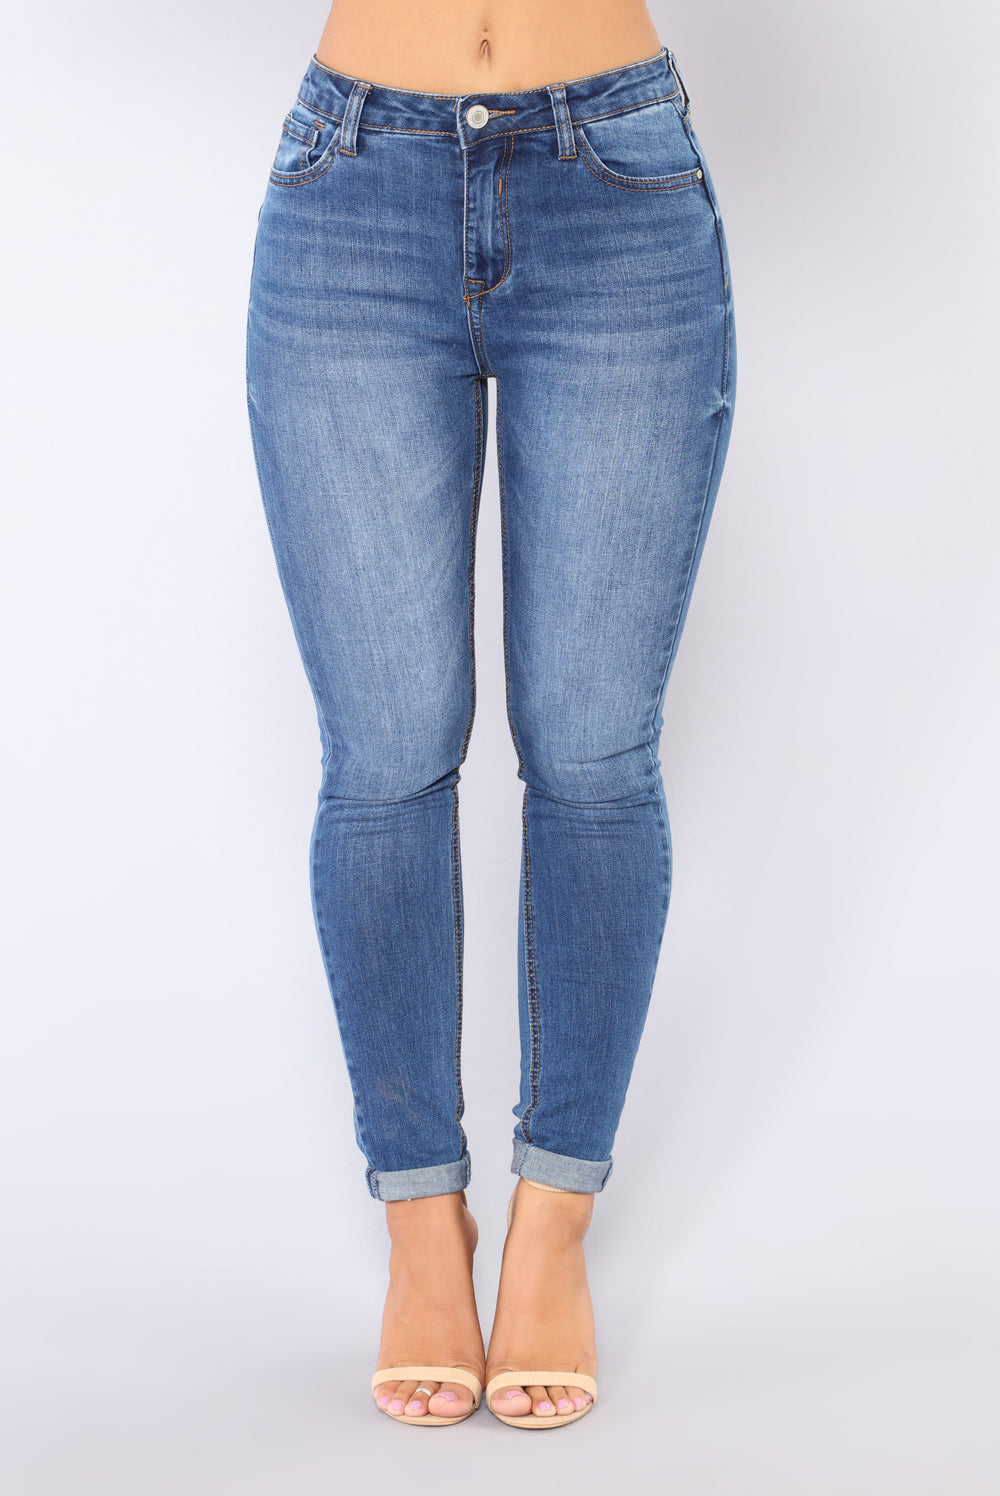 Randie Skinny Jeans - Medium Blue Wash